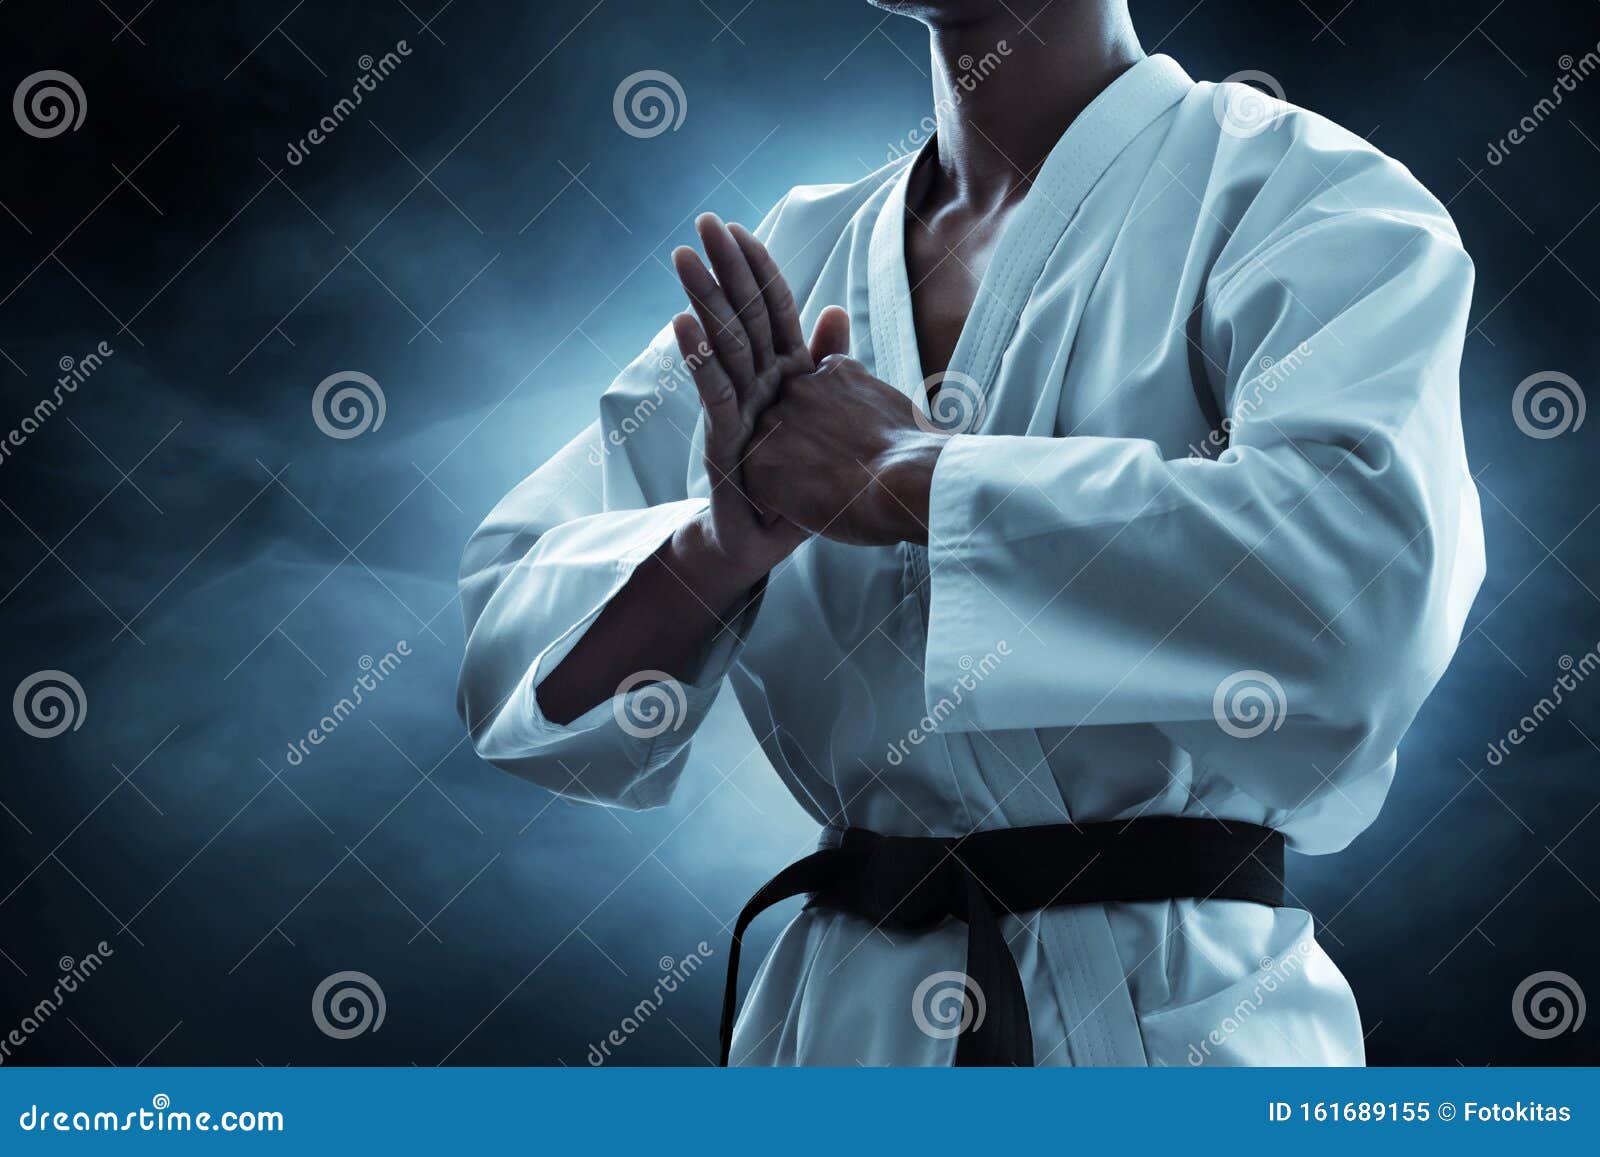 karate martial arts fighter on dark background